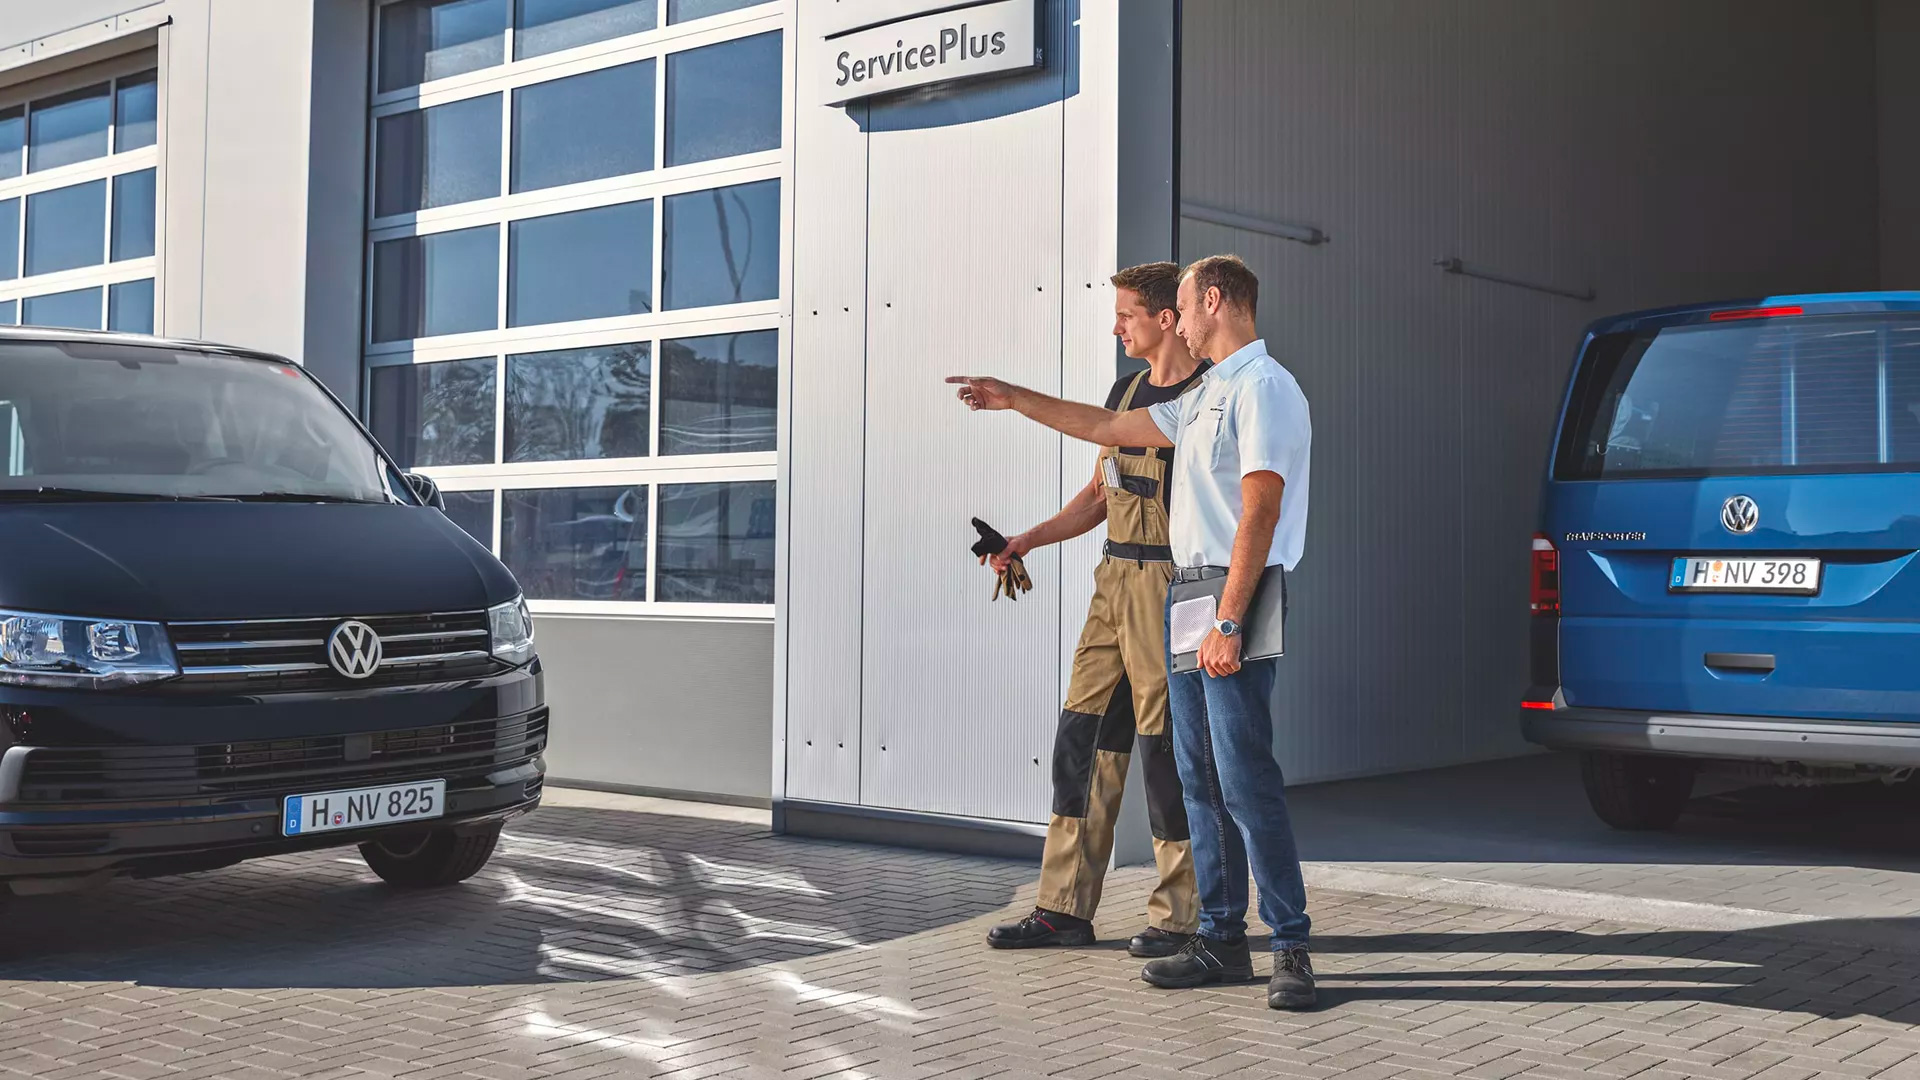 ServicePlus Meccanico e venditore che parlano davanti ad un Volkswagen Veicolo Commerciale